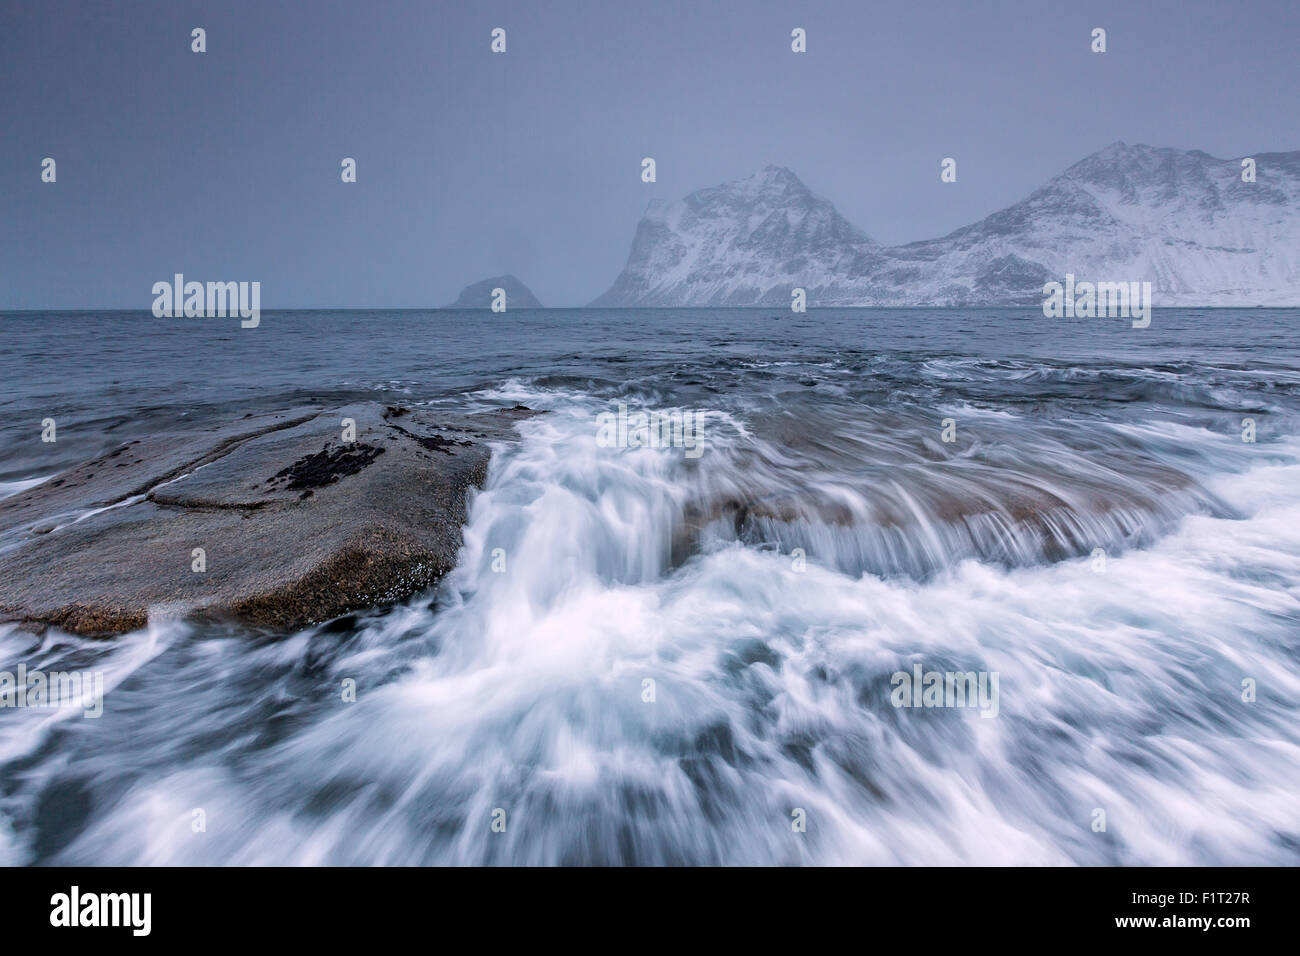 Onde che si infrangono sulle rocce del mare freddo, Haukland, Isole Lofoten Norvegia settentrionale, Scandinavia, artiche, Europa Foto Stock